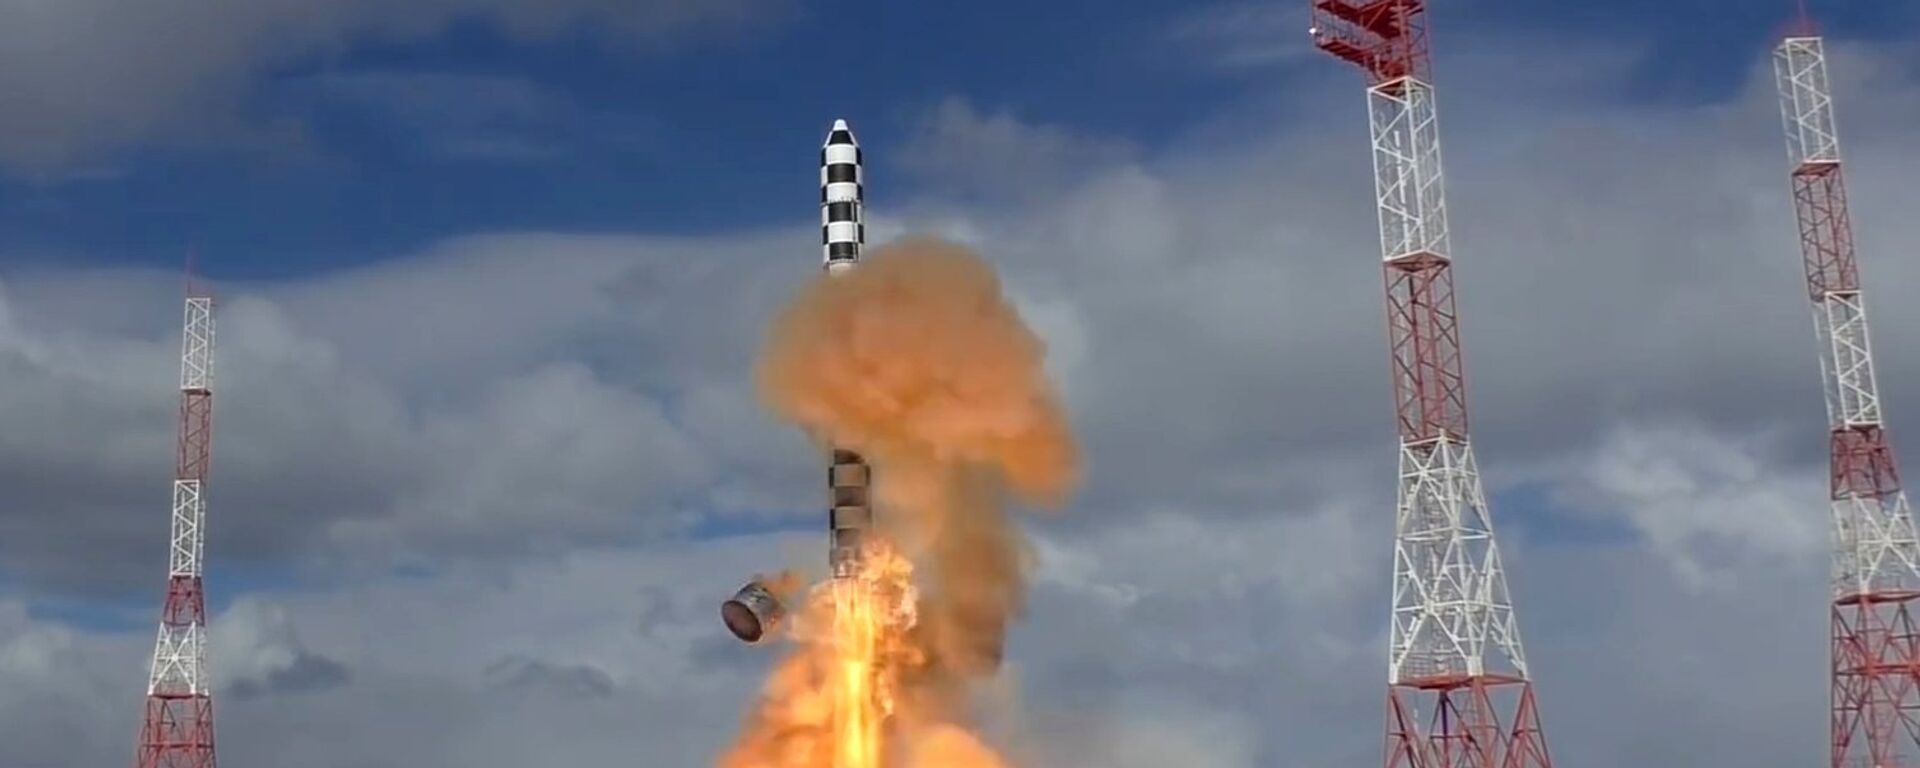 Lansiranje teške interkontinentalne balističke raket Sarmat sa kosmodroma Pleseck u Arhangelskoj oblasti Rusije - Sputnik Srbija, 1920, 07.08.2021